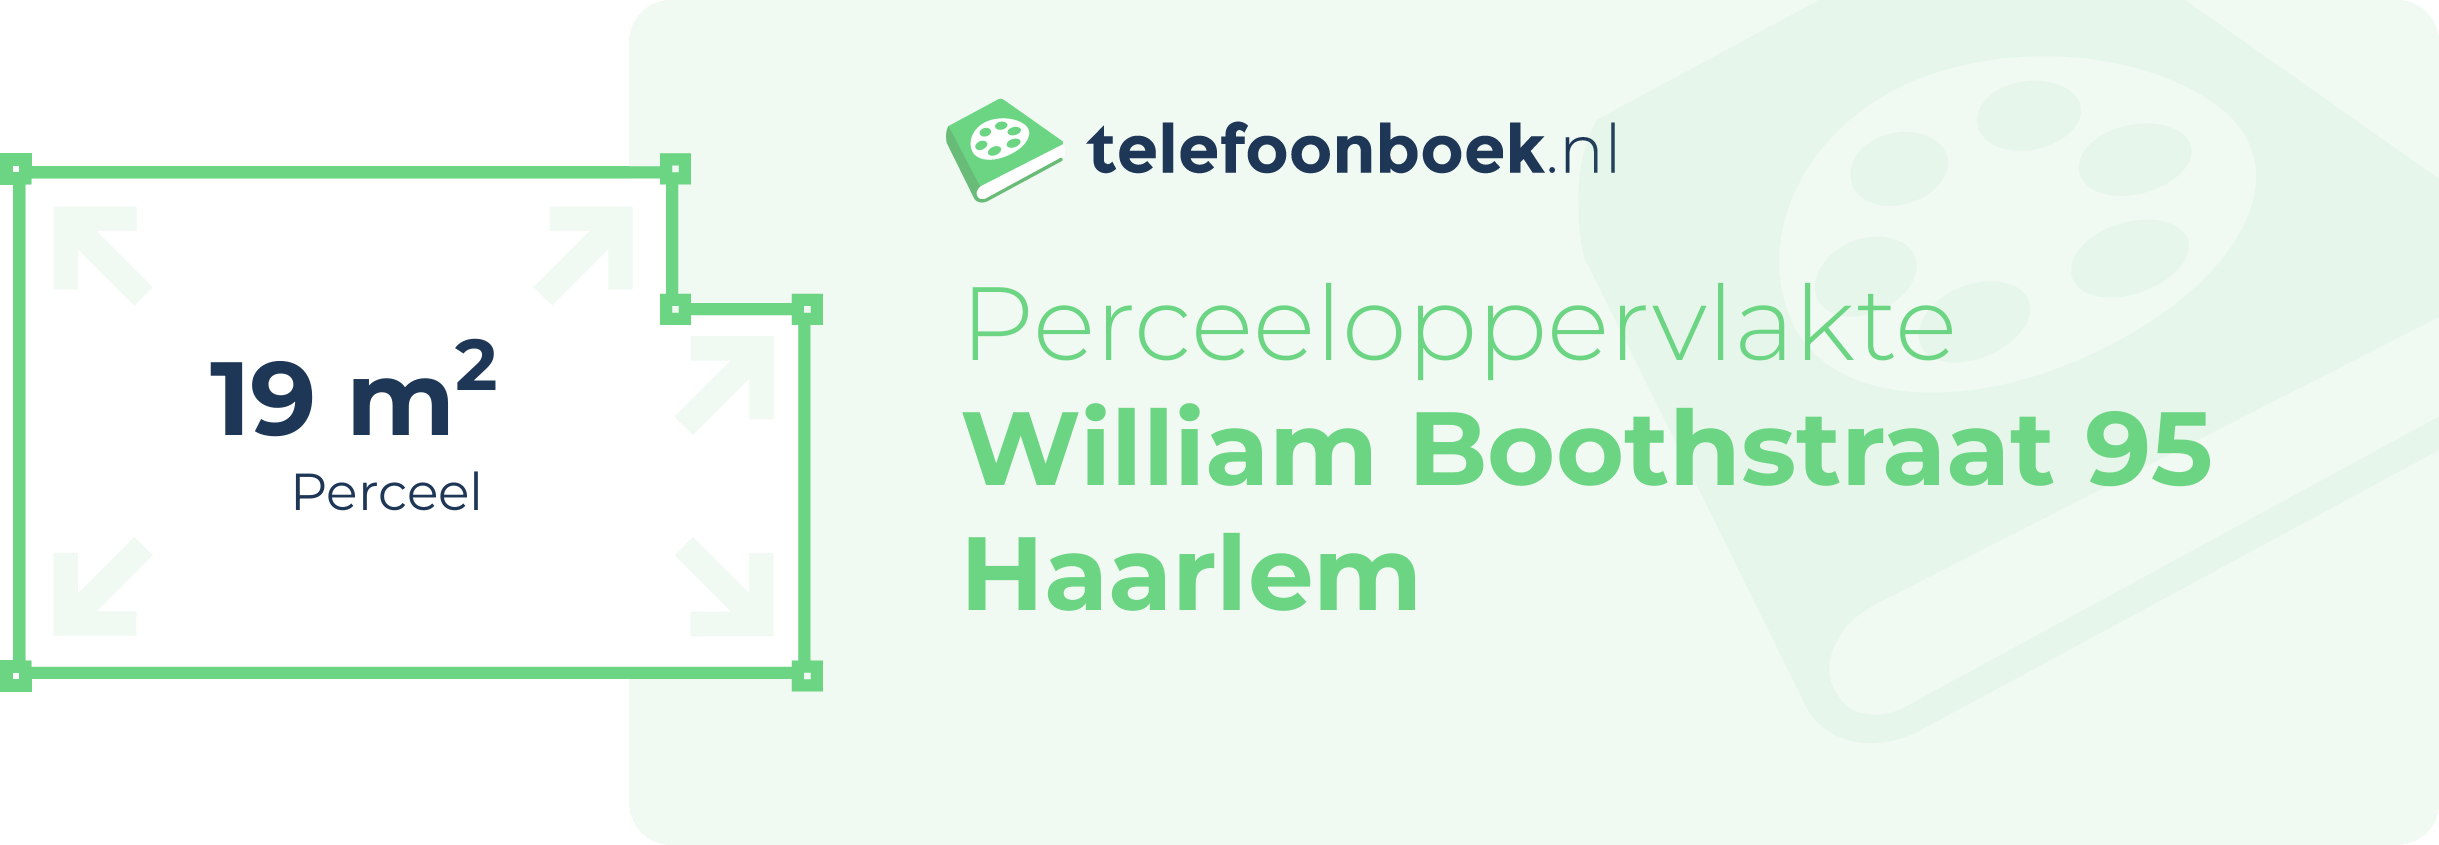 Perceeloppervlakte William Boothstraat 95 Haarlem